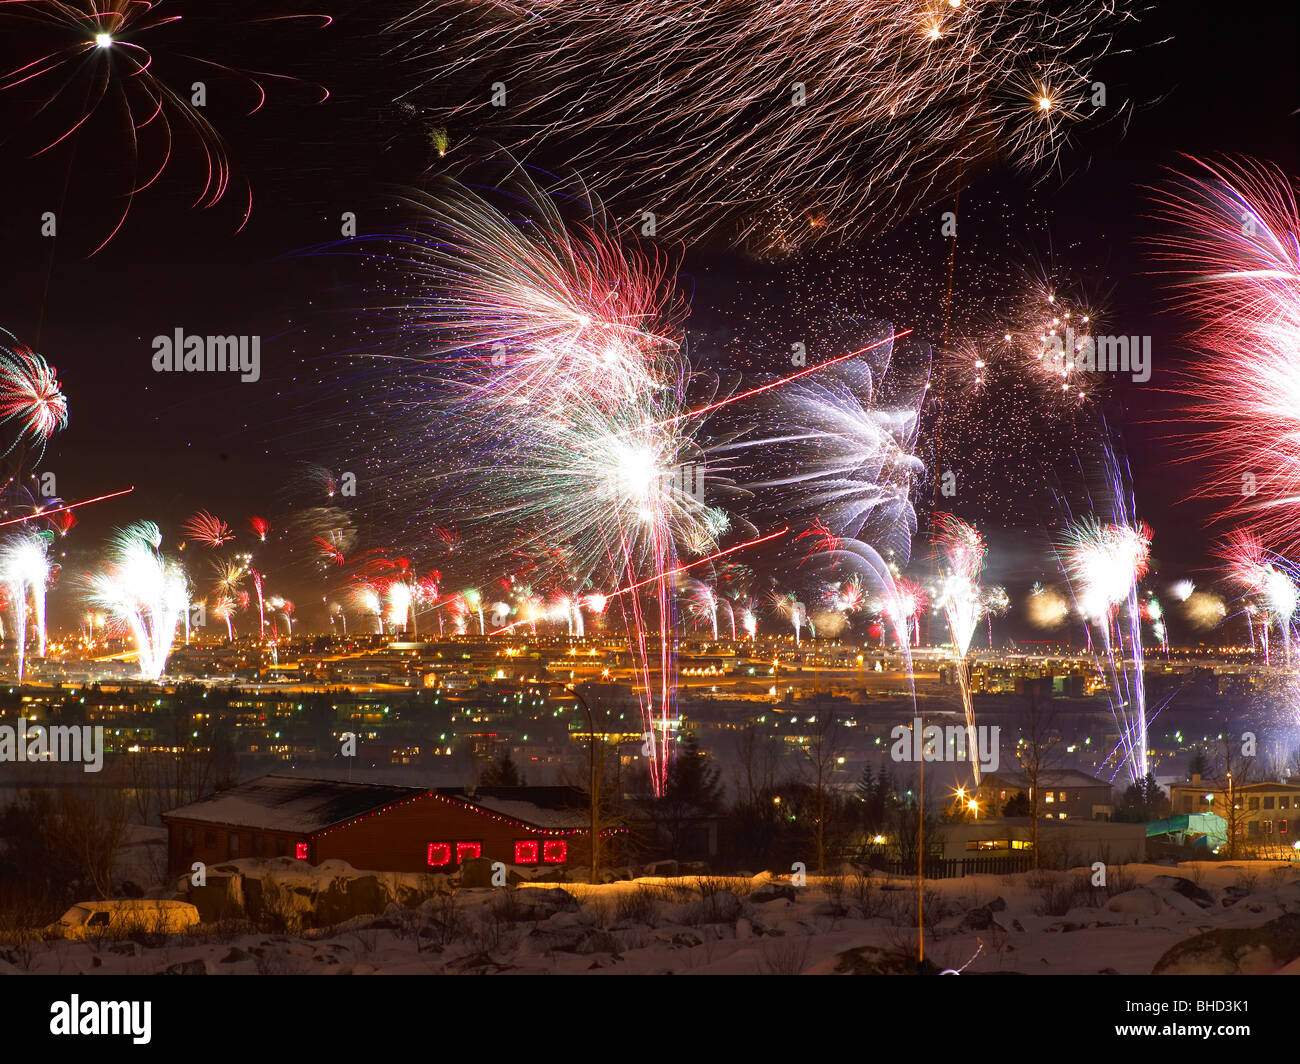 Firework celebration on New Year's Eve, Reykjavik, Iceland Stock Photo